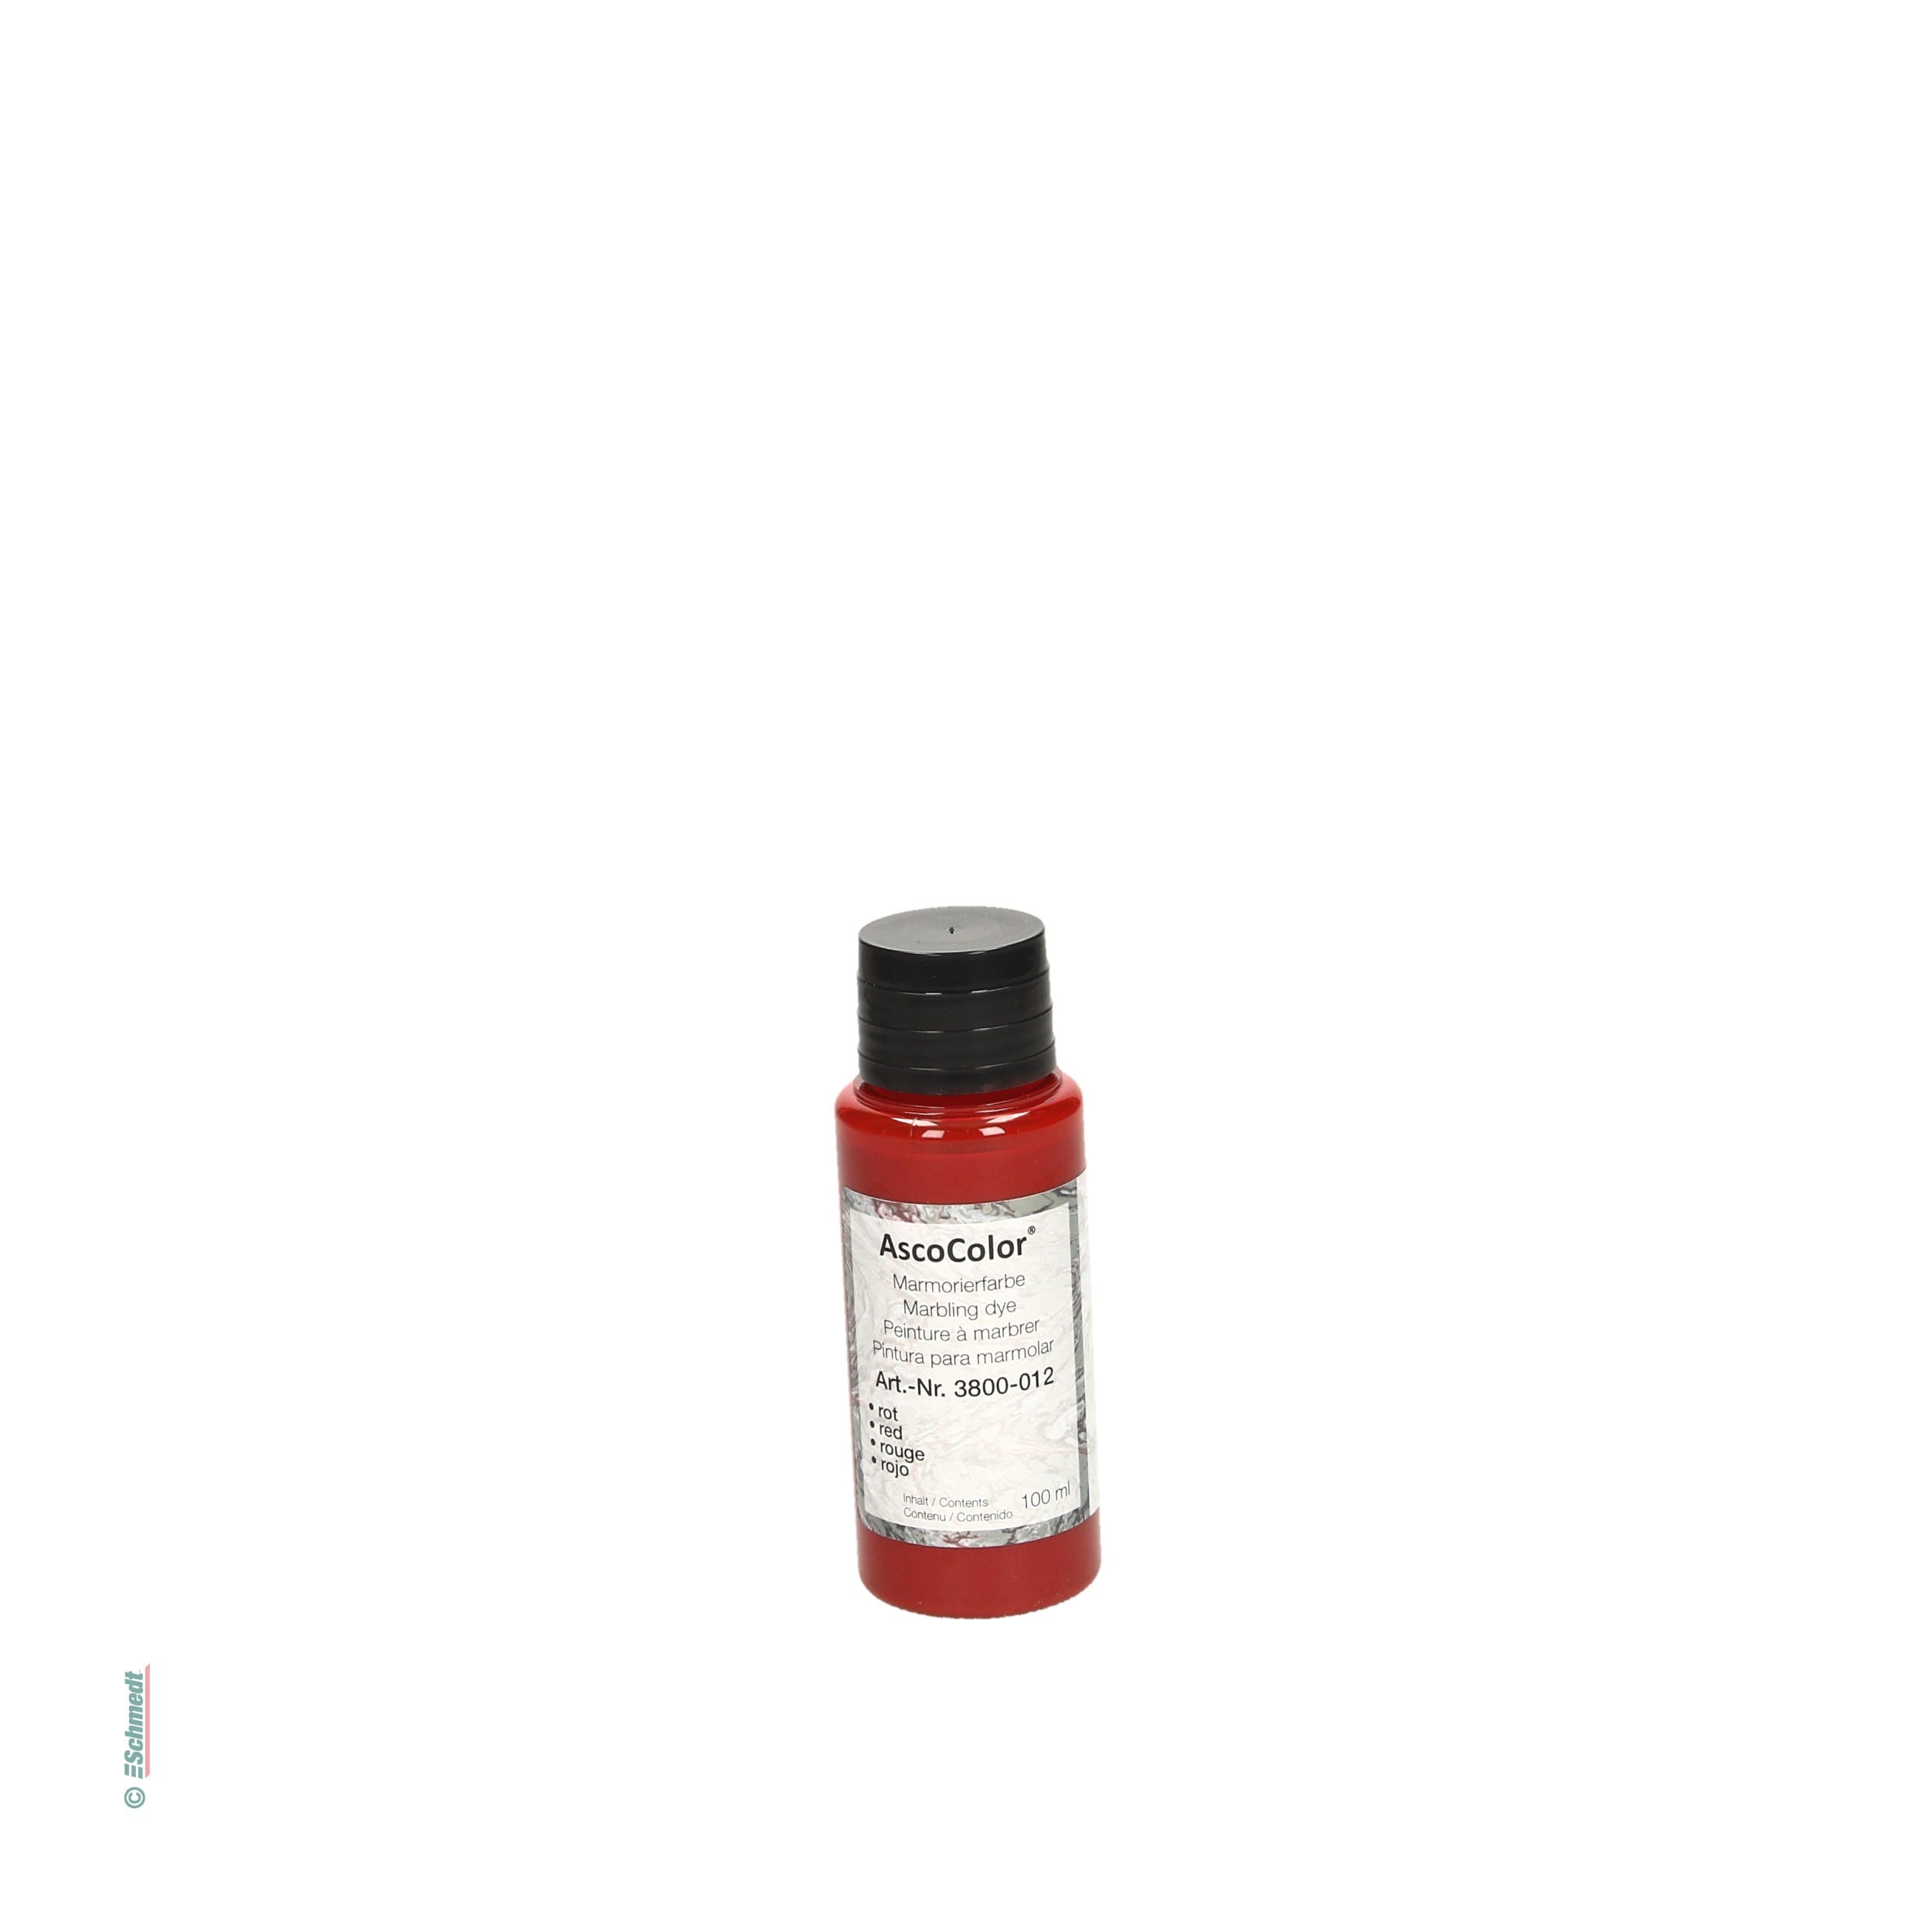 AscoColor® - peinture à marbrer - Couleur rouge - Contenu Bouteille / 100 ml - pour créér papiers marbrés... - image-1